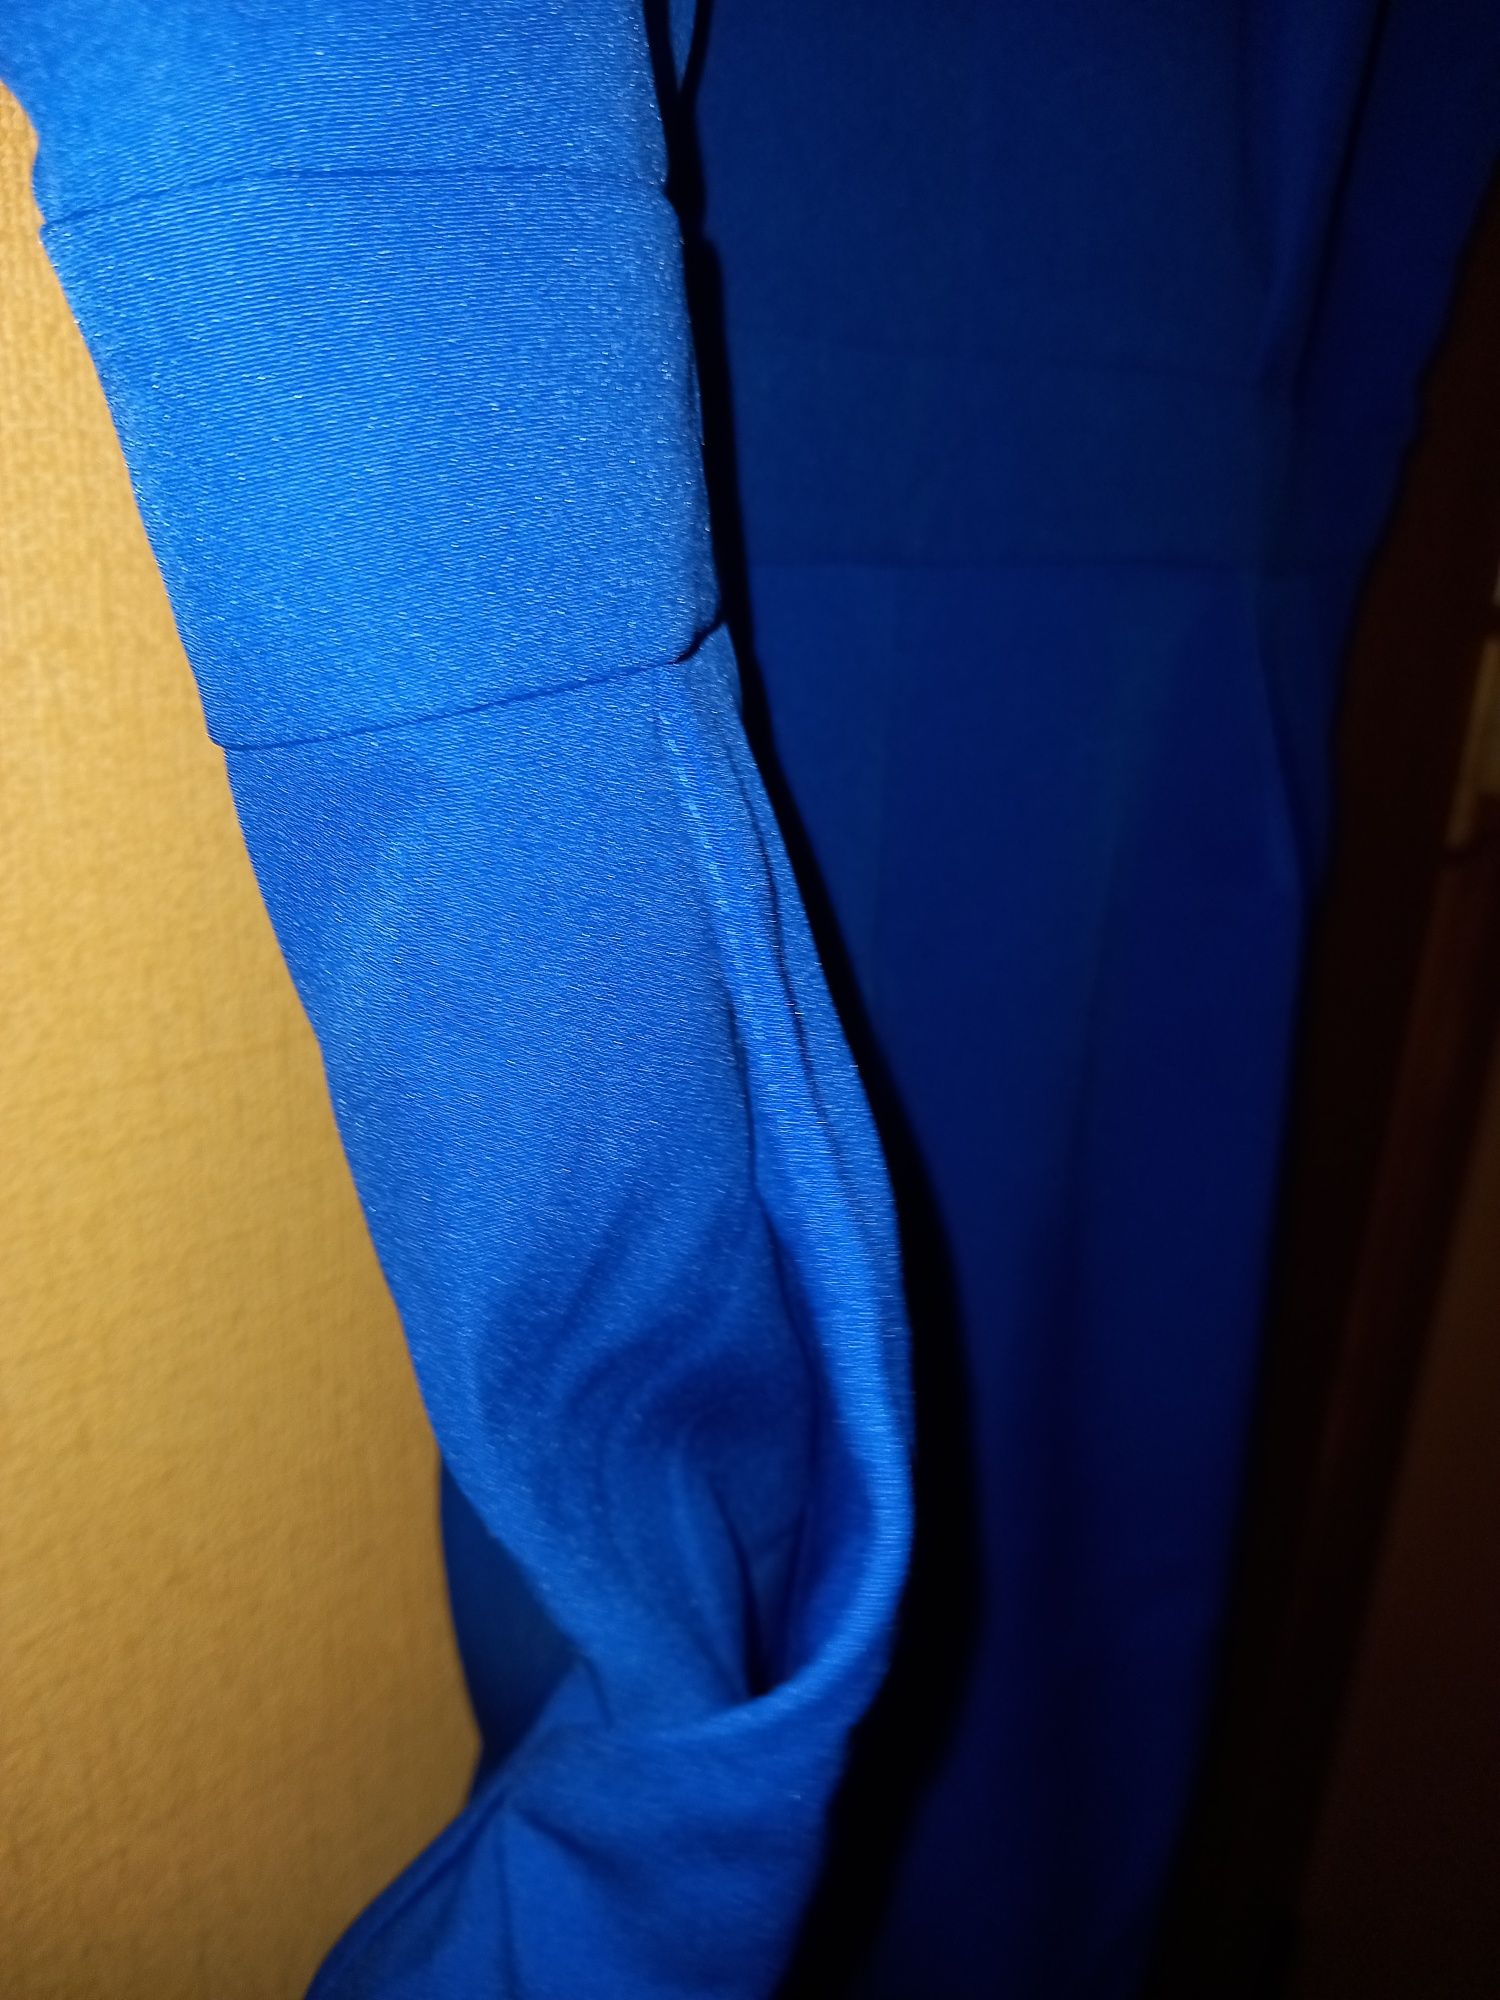 Платье синего цвета прямой фасон с замком.